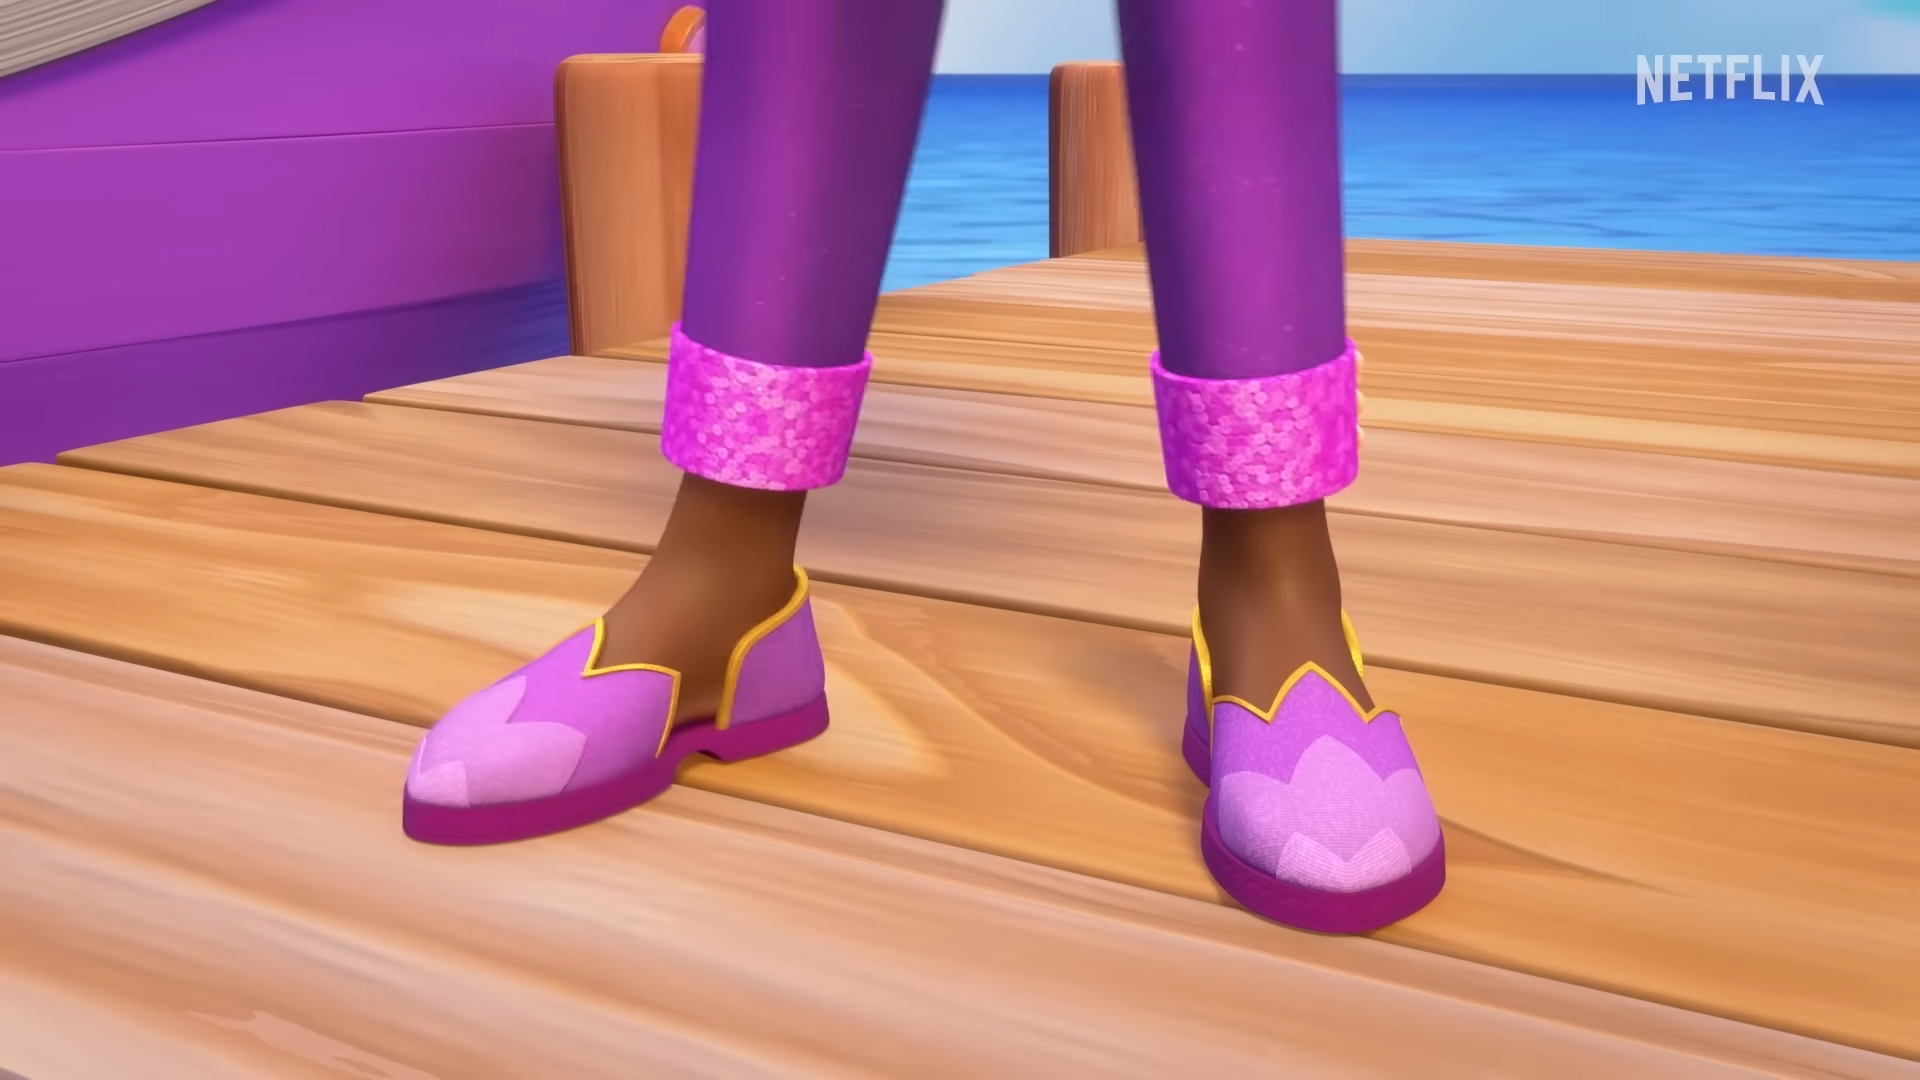 a cartoon of legs wearing purple shoes